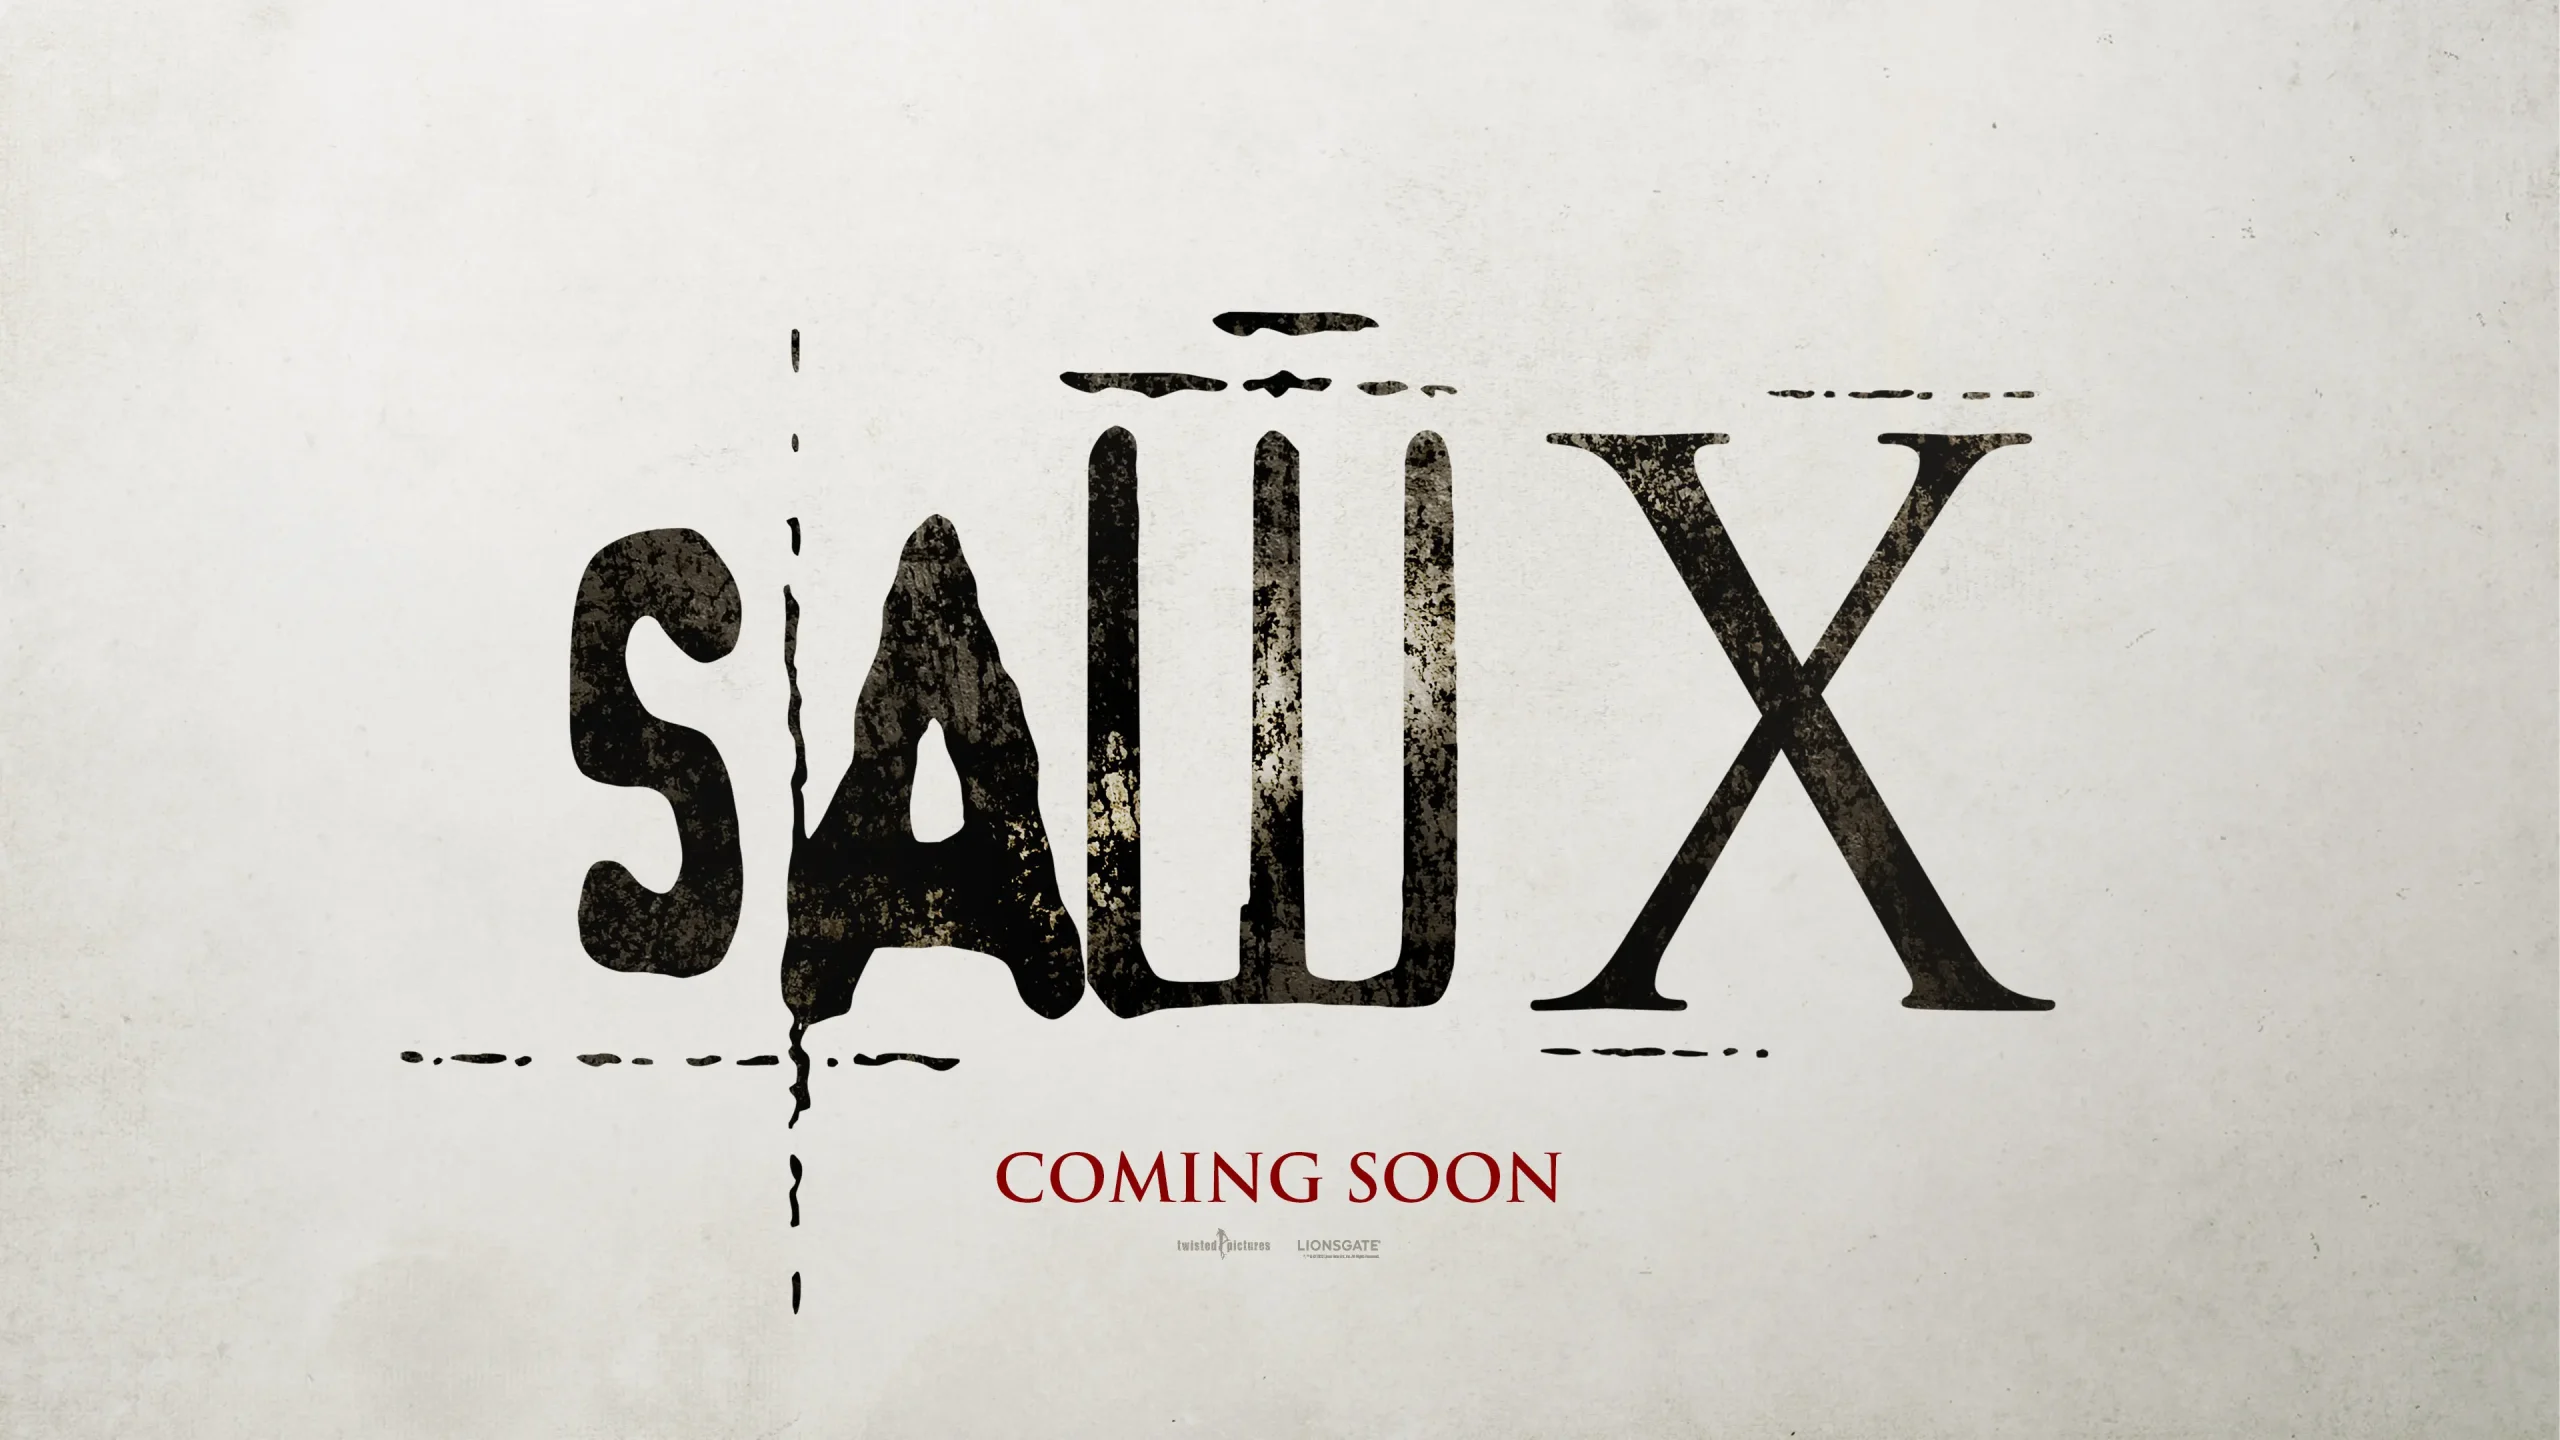 لوگو رسمی فیلم Saw X